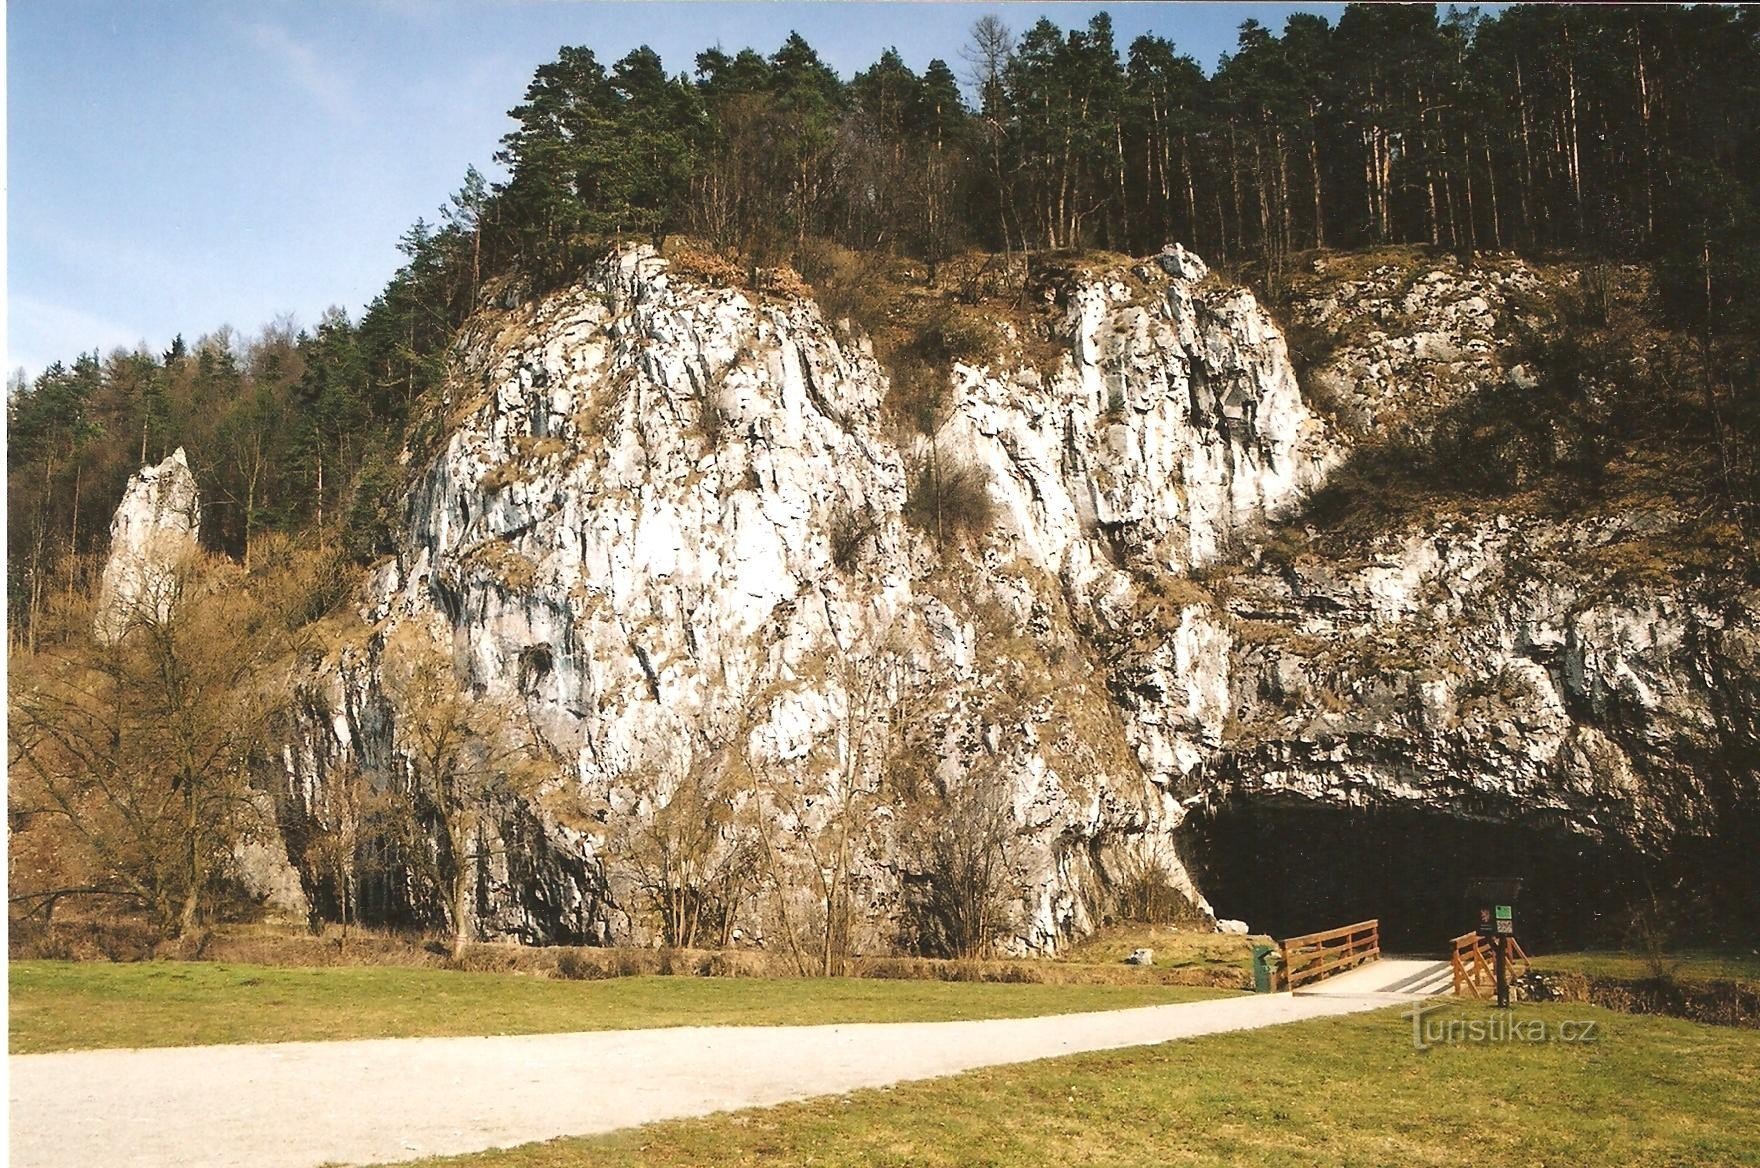 スループ洞窟の入り口の上の岩壁